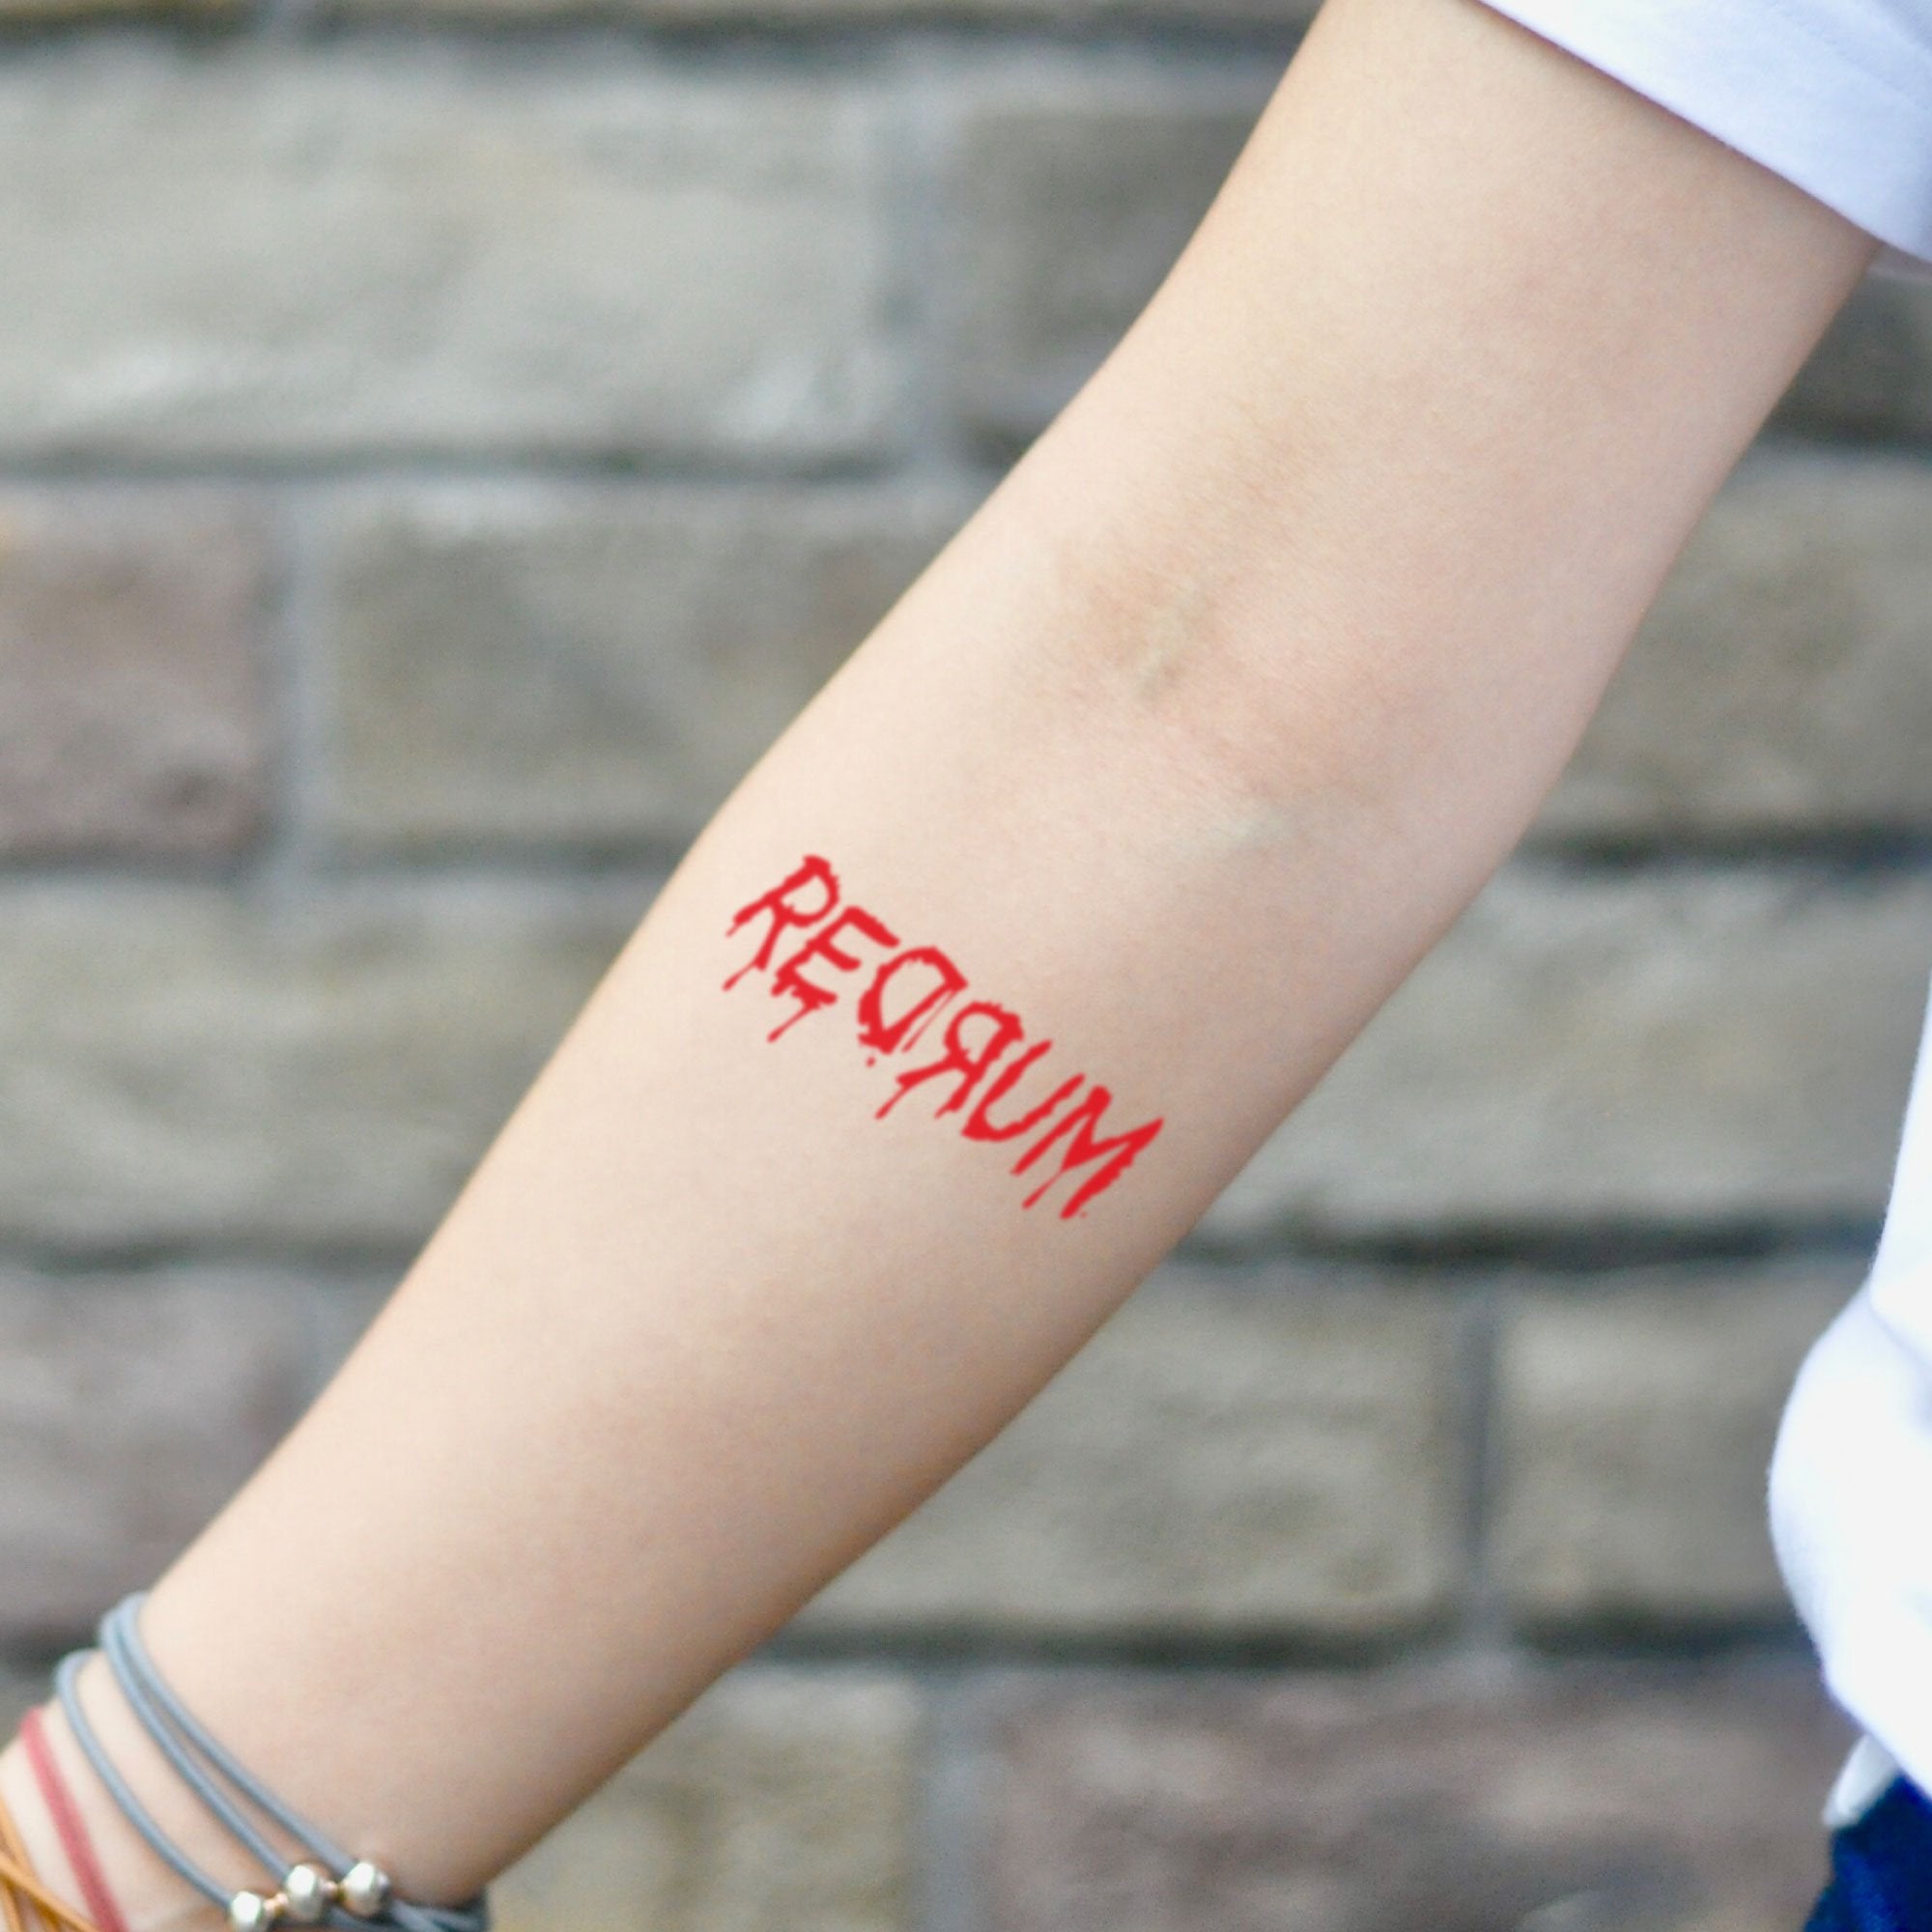 REDRUM Tattoo Parlour (@redrum_tattoo_parlour) | TikTok